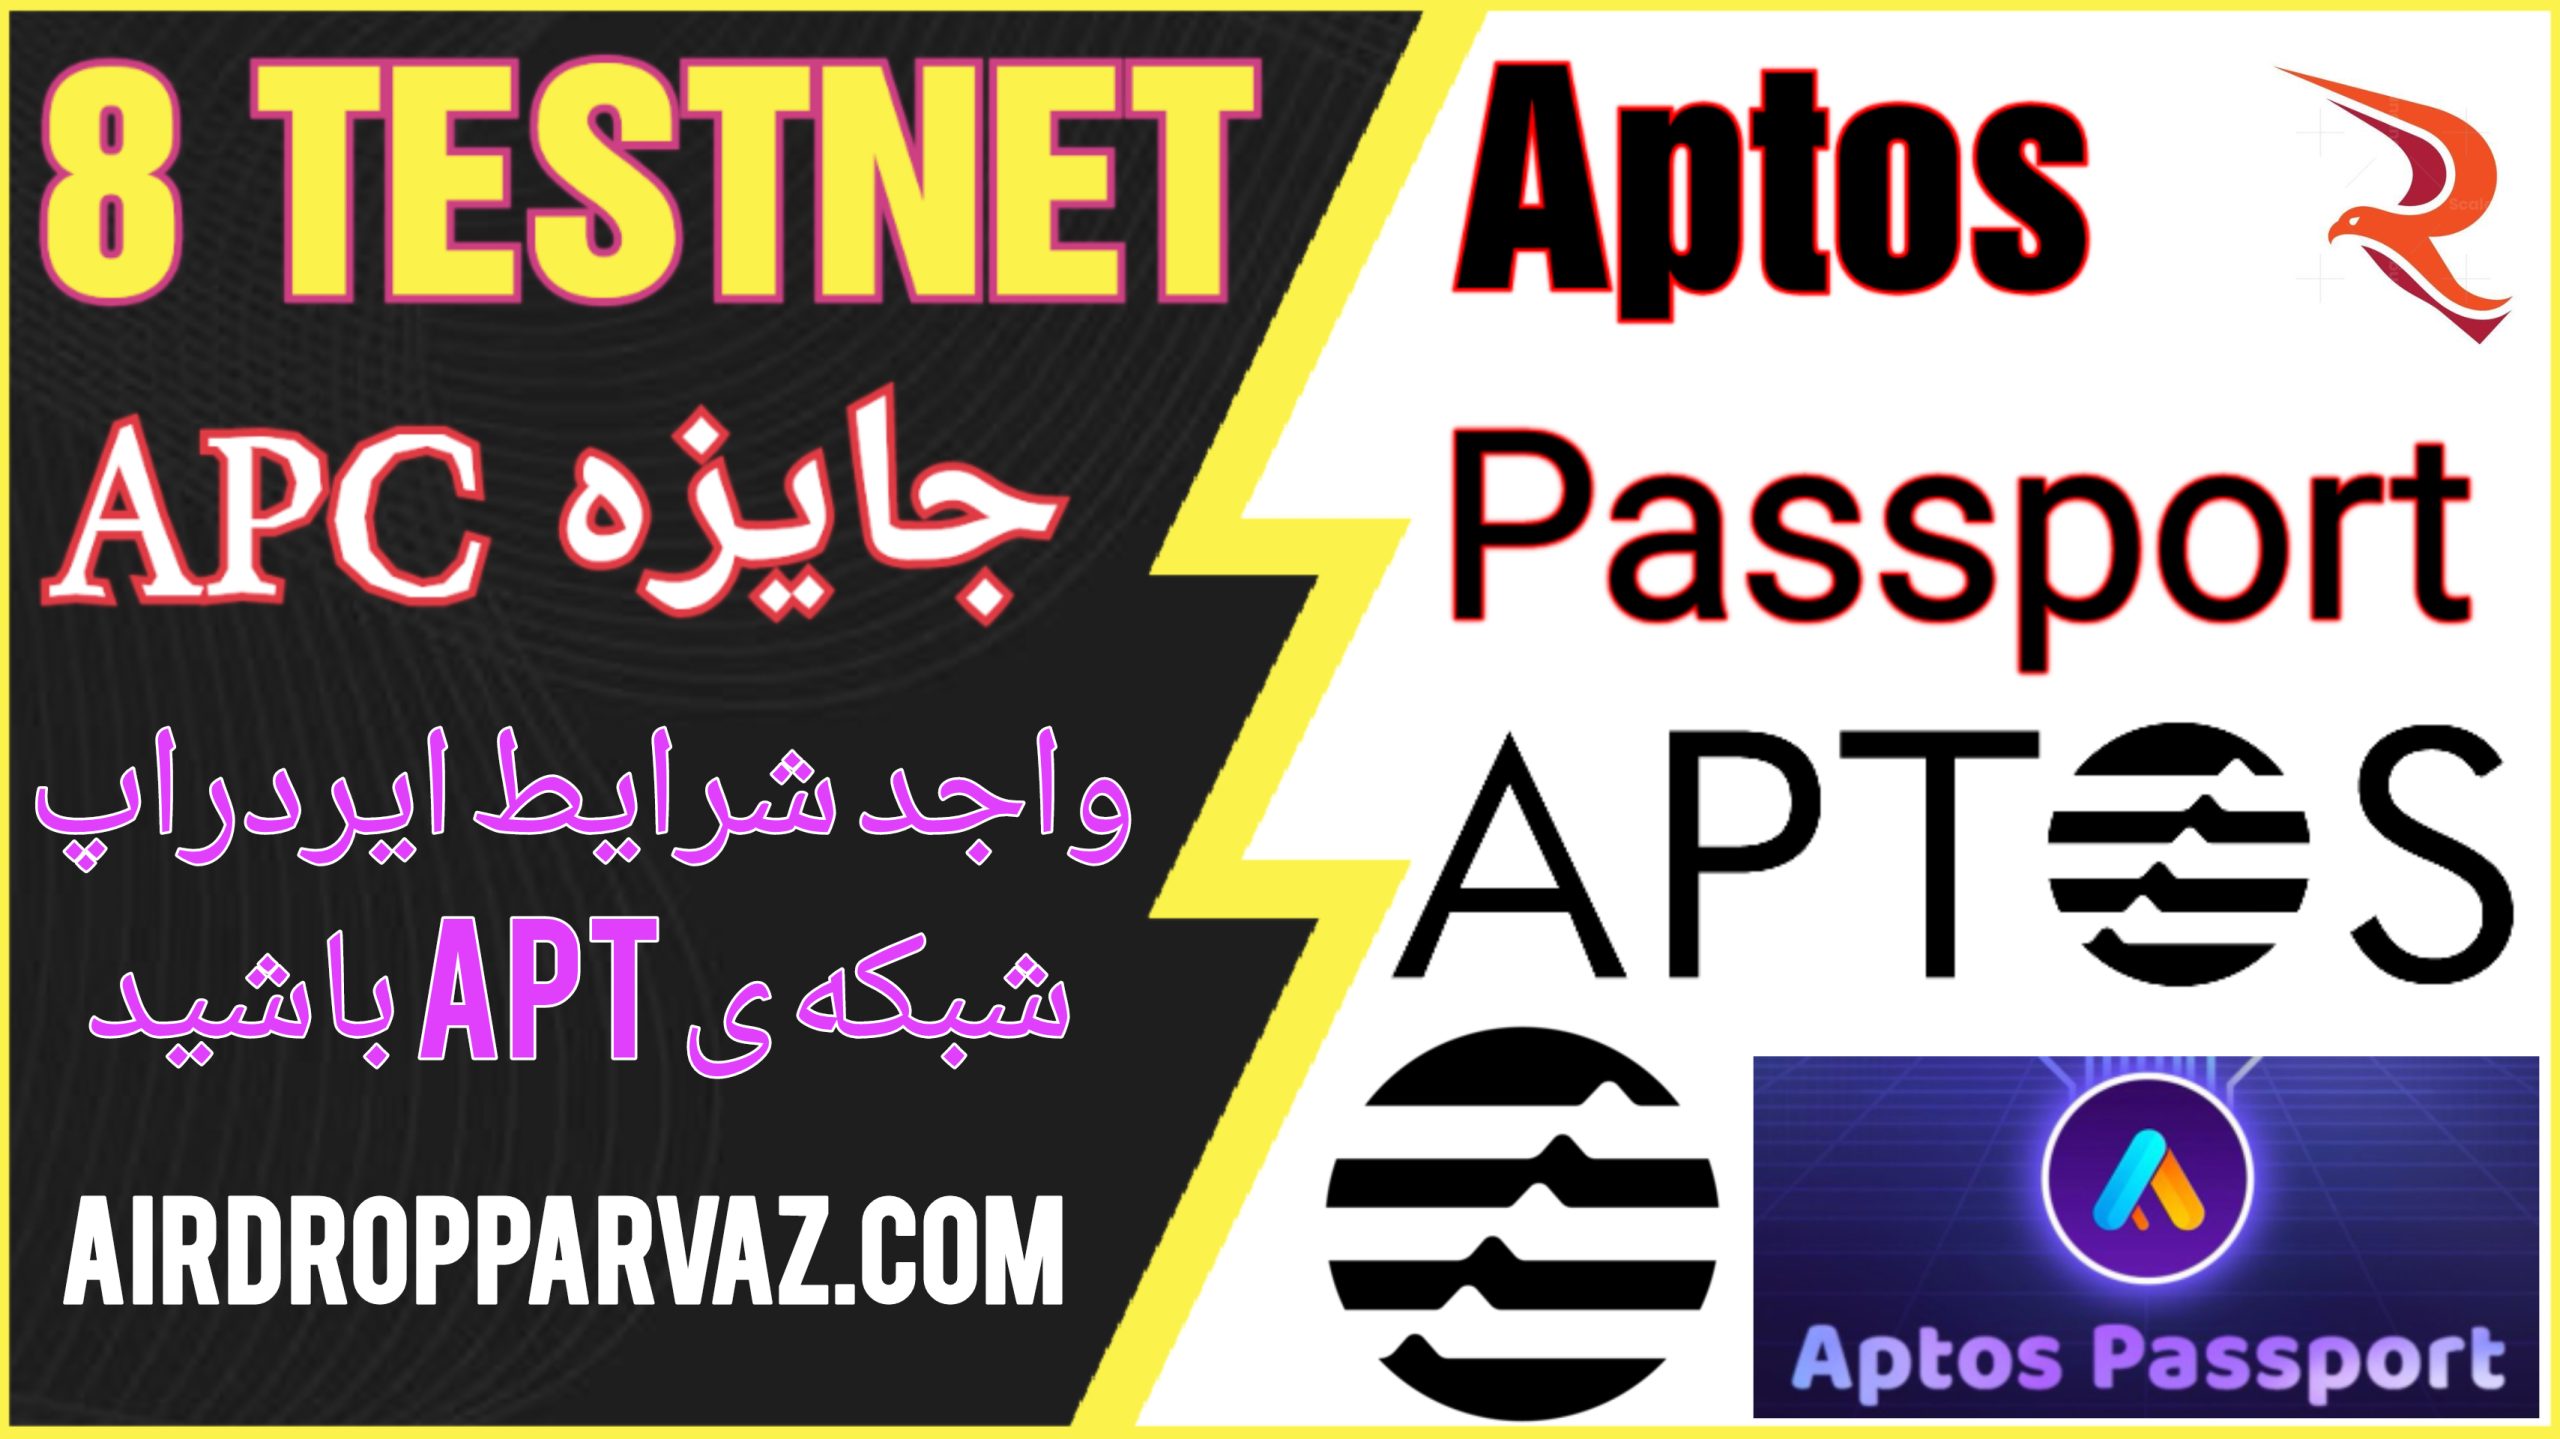 Aptos passport